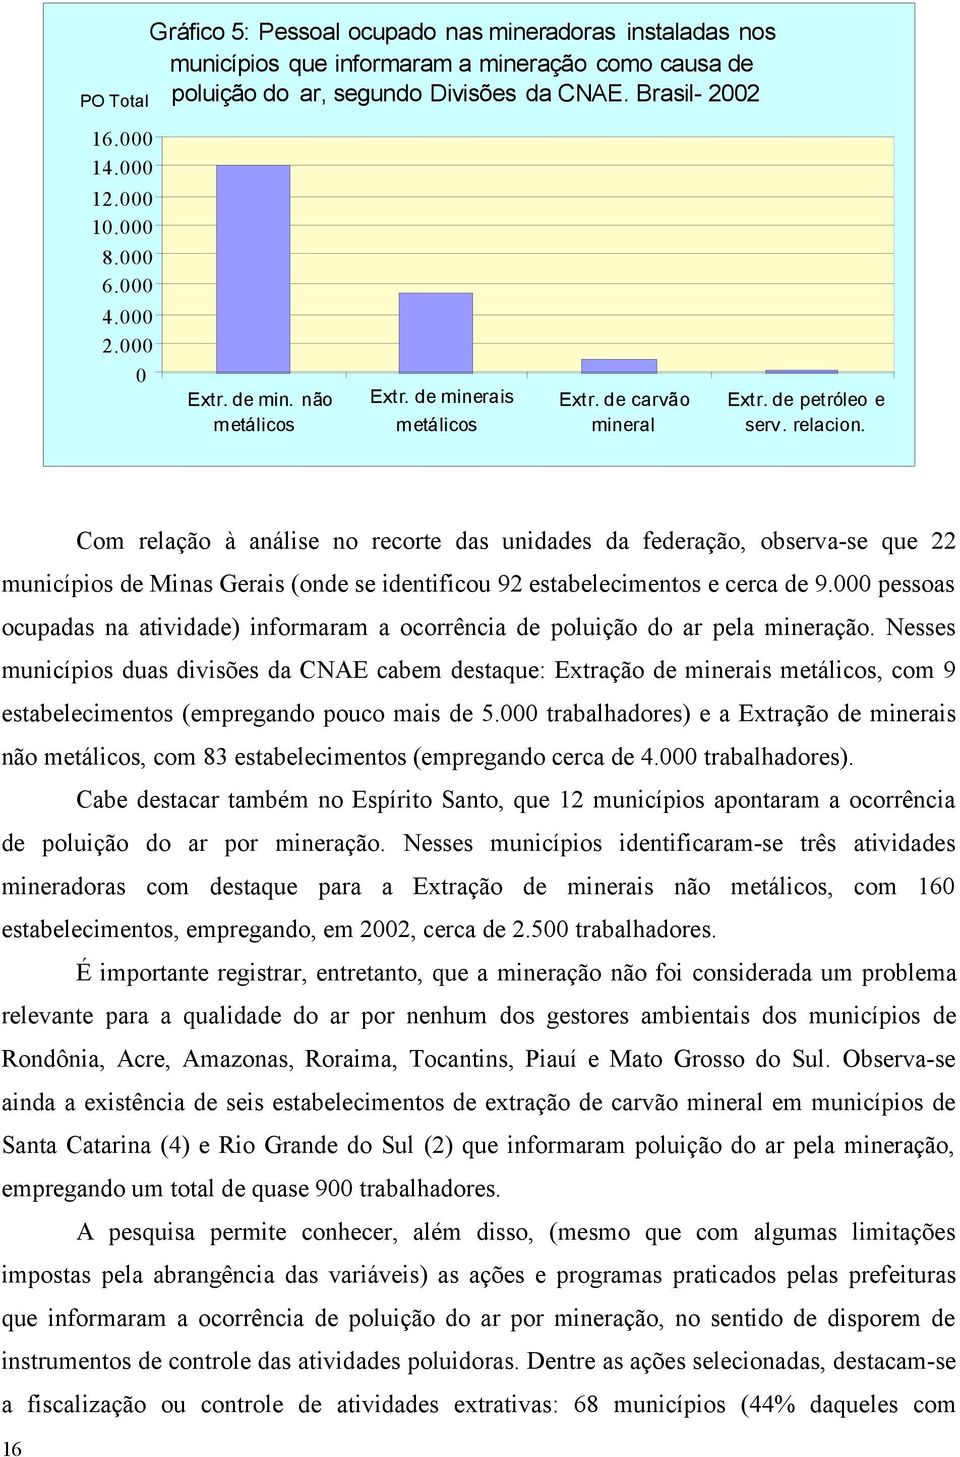 Com relação à análise no recorte das unidades da federação, observa-se que 22 municípios de Minas Gerais (onde se identificou 92 estabelecimentos e cerca de 9.